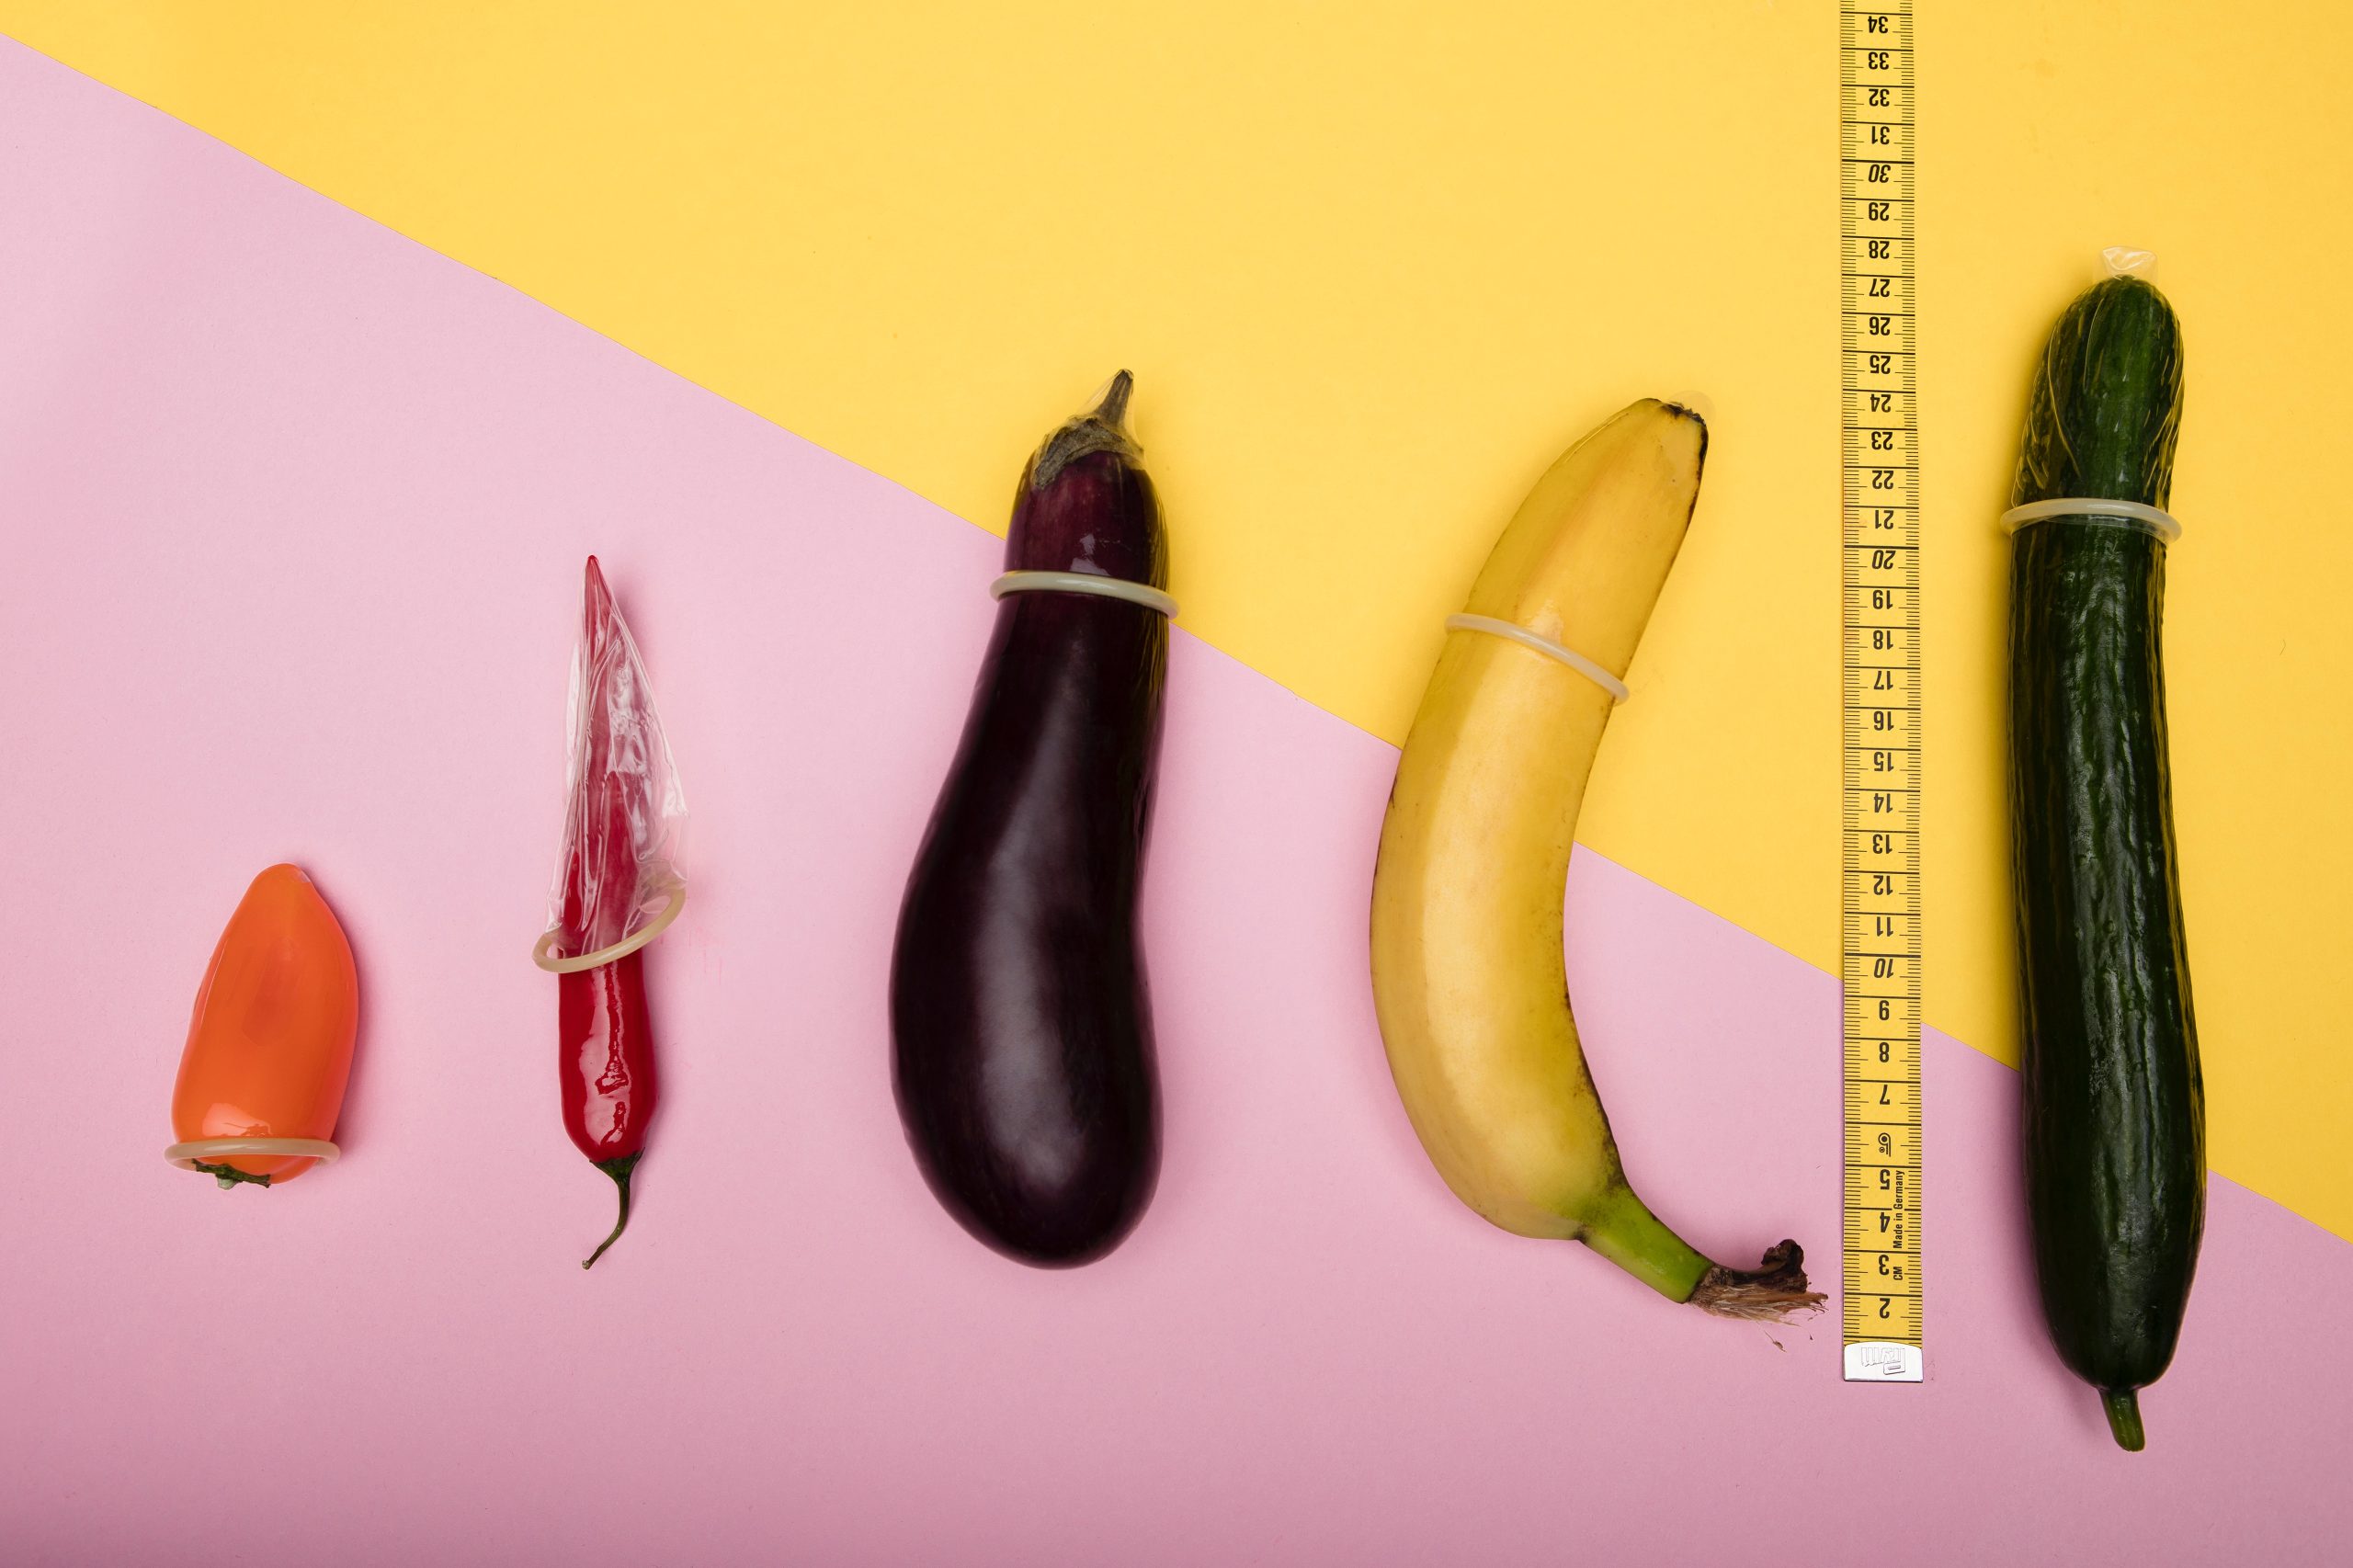 Durchschnittliche Penisgröße in Deutschland – ist dein Penis normal?